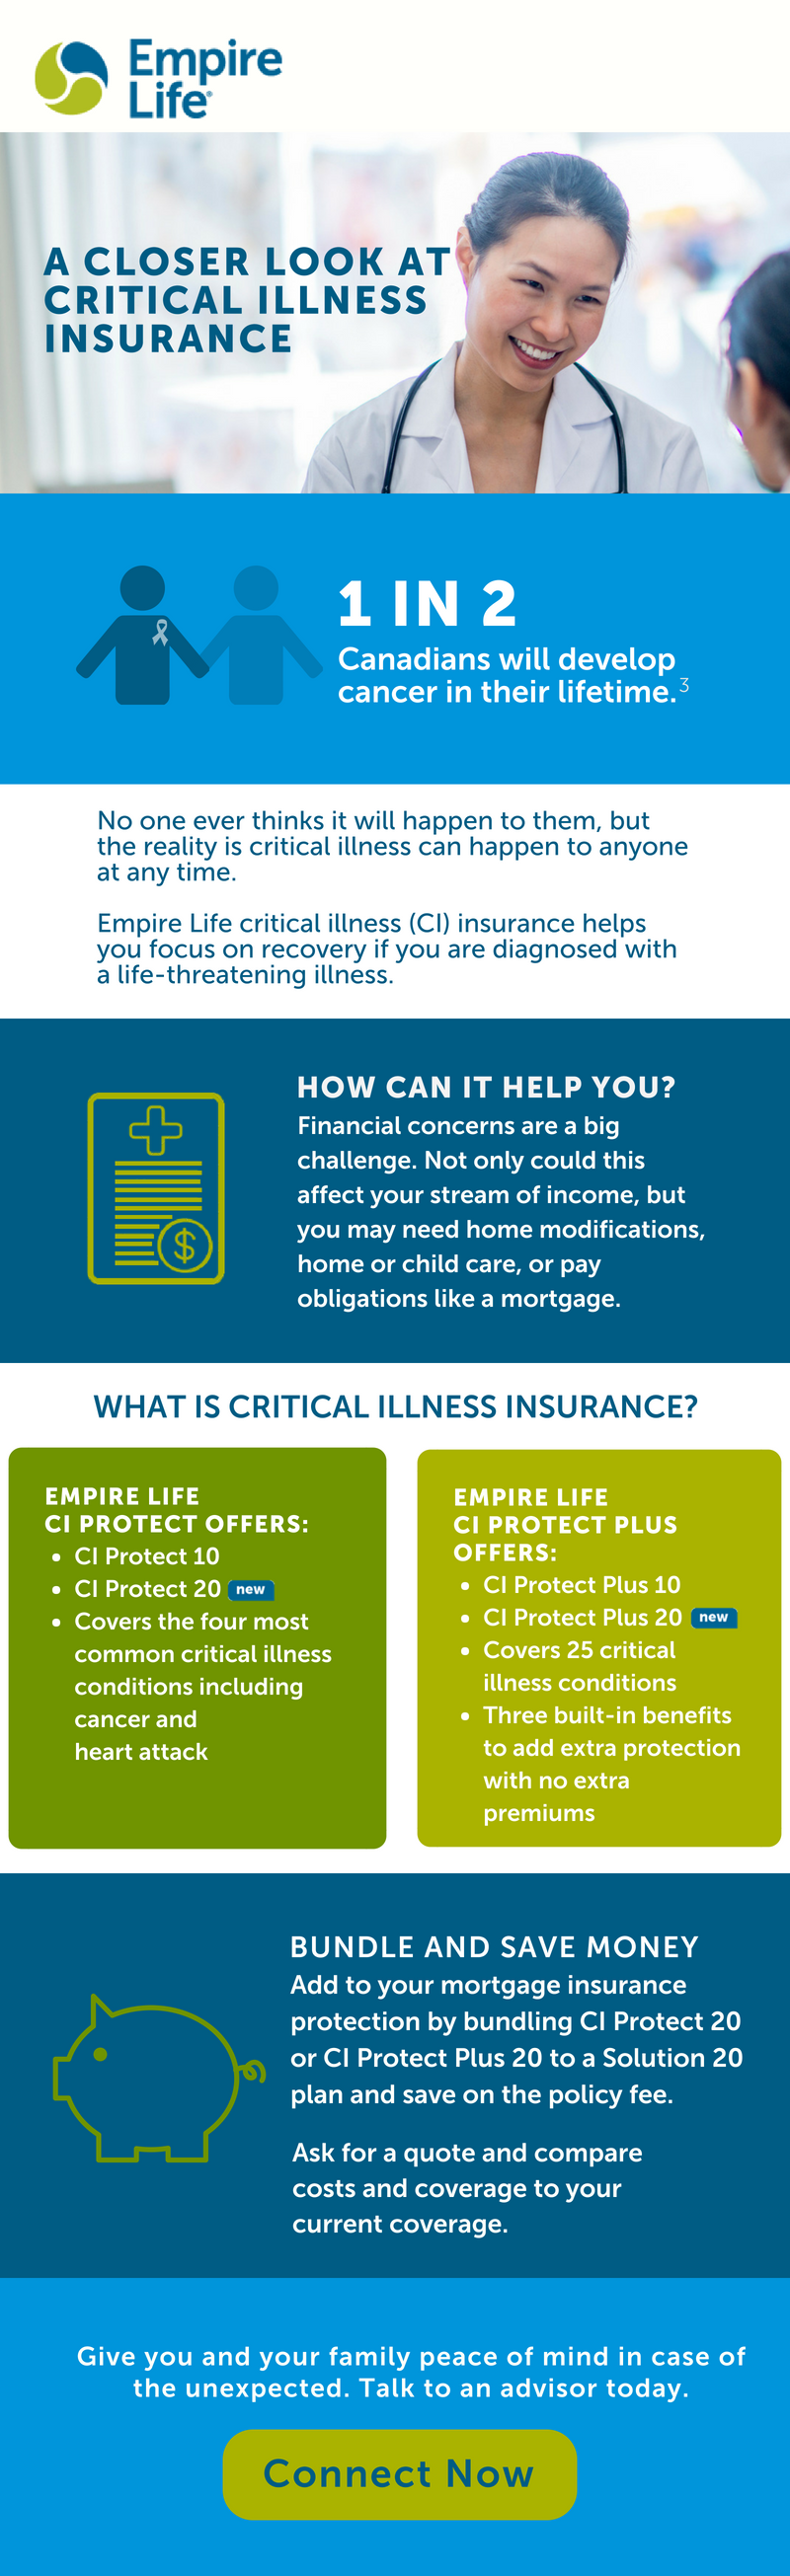 A closer look at critical illness insurance